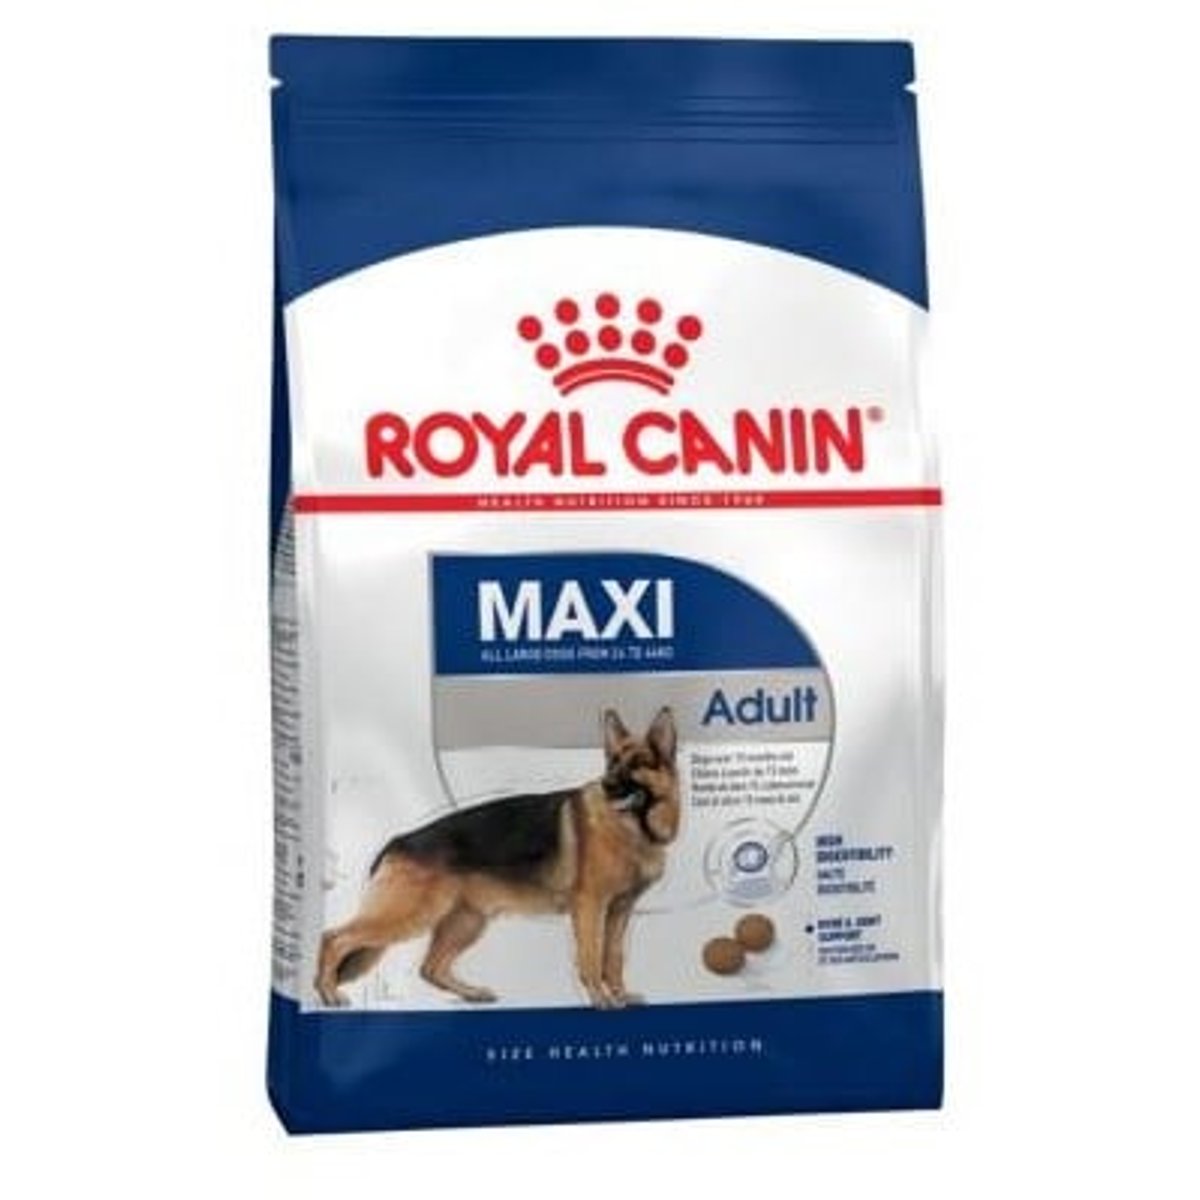 Royal Canin Maxi granule pro psy velkých plemen